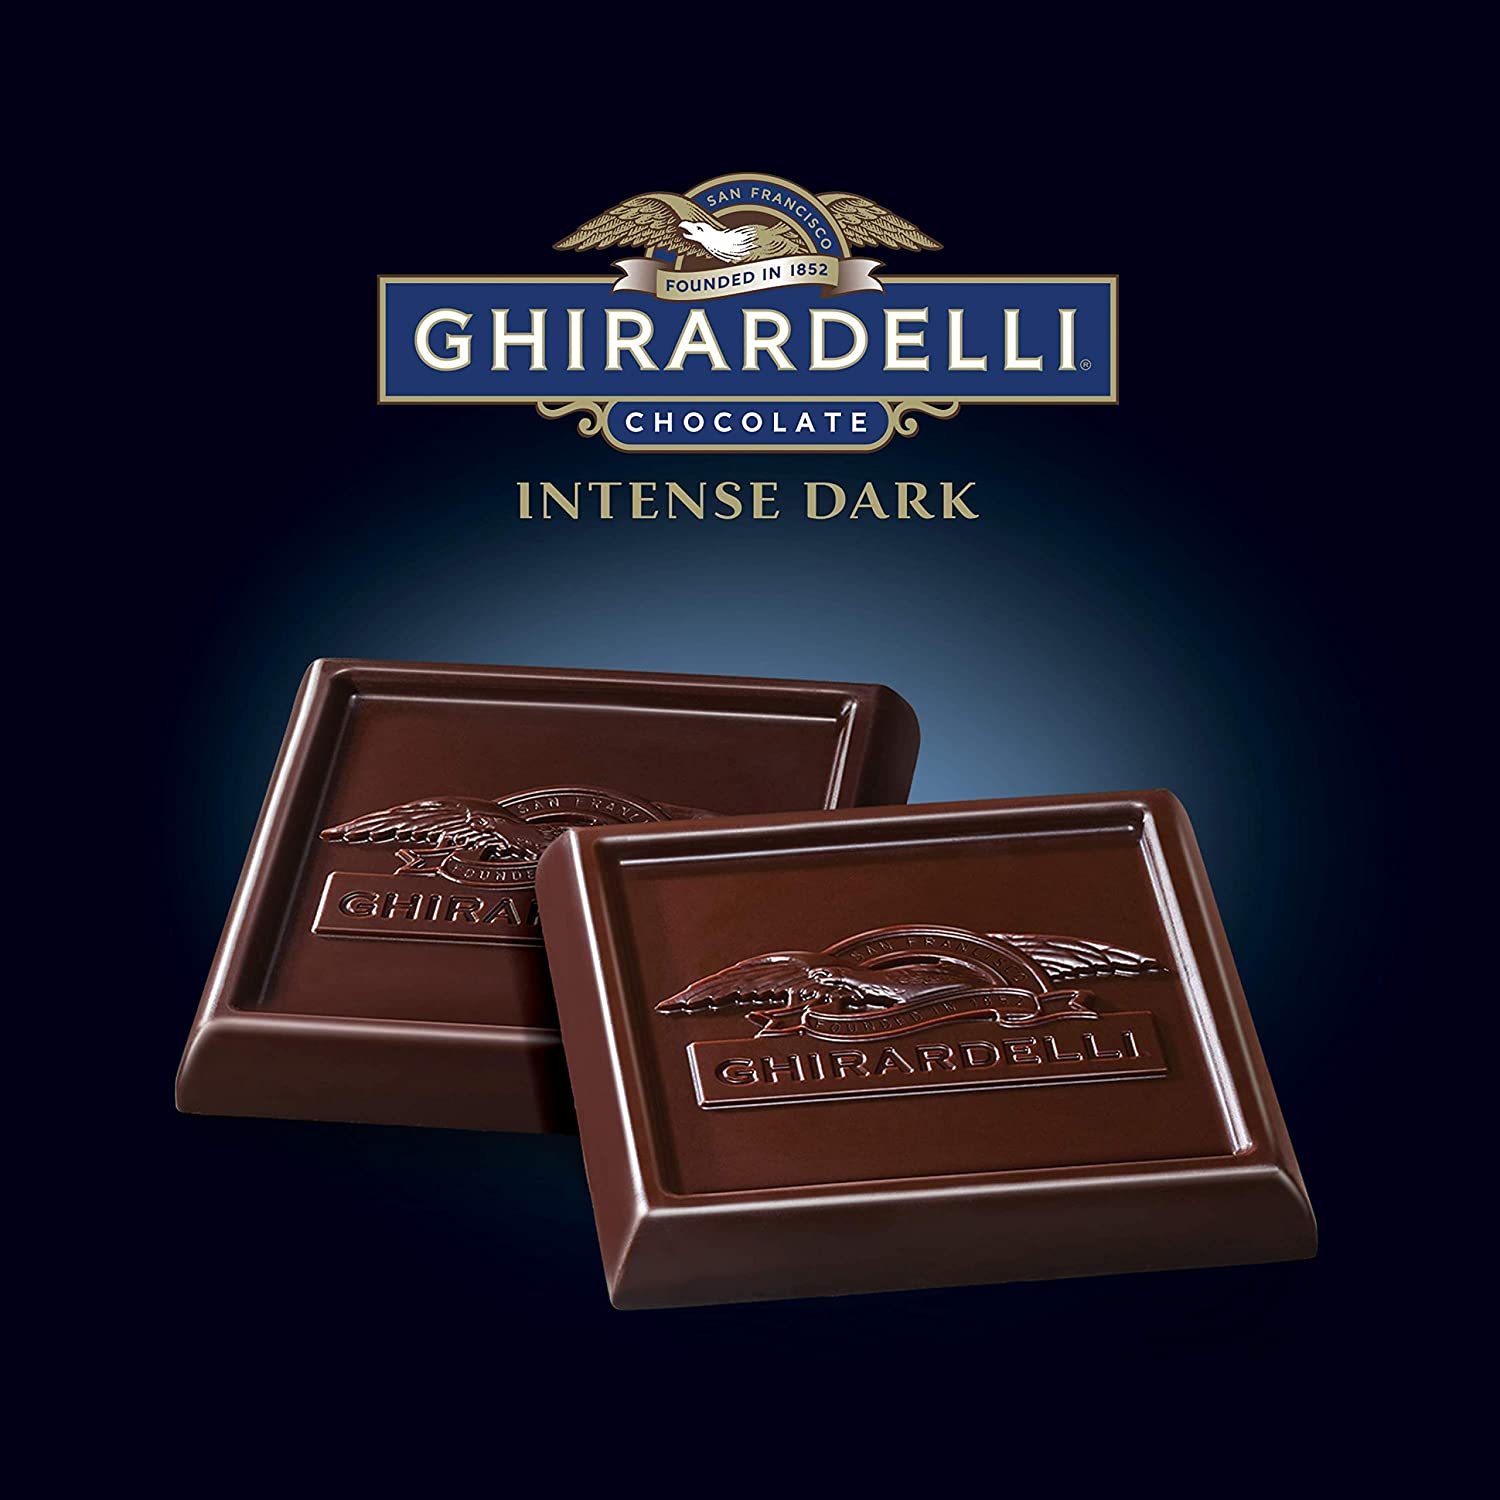 Ghirardelli Intense Dark Midnight Reverie Chocolate Bar - 3.1 oz